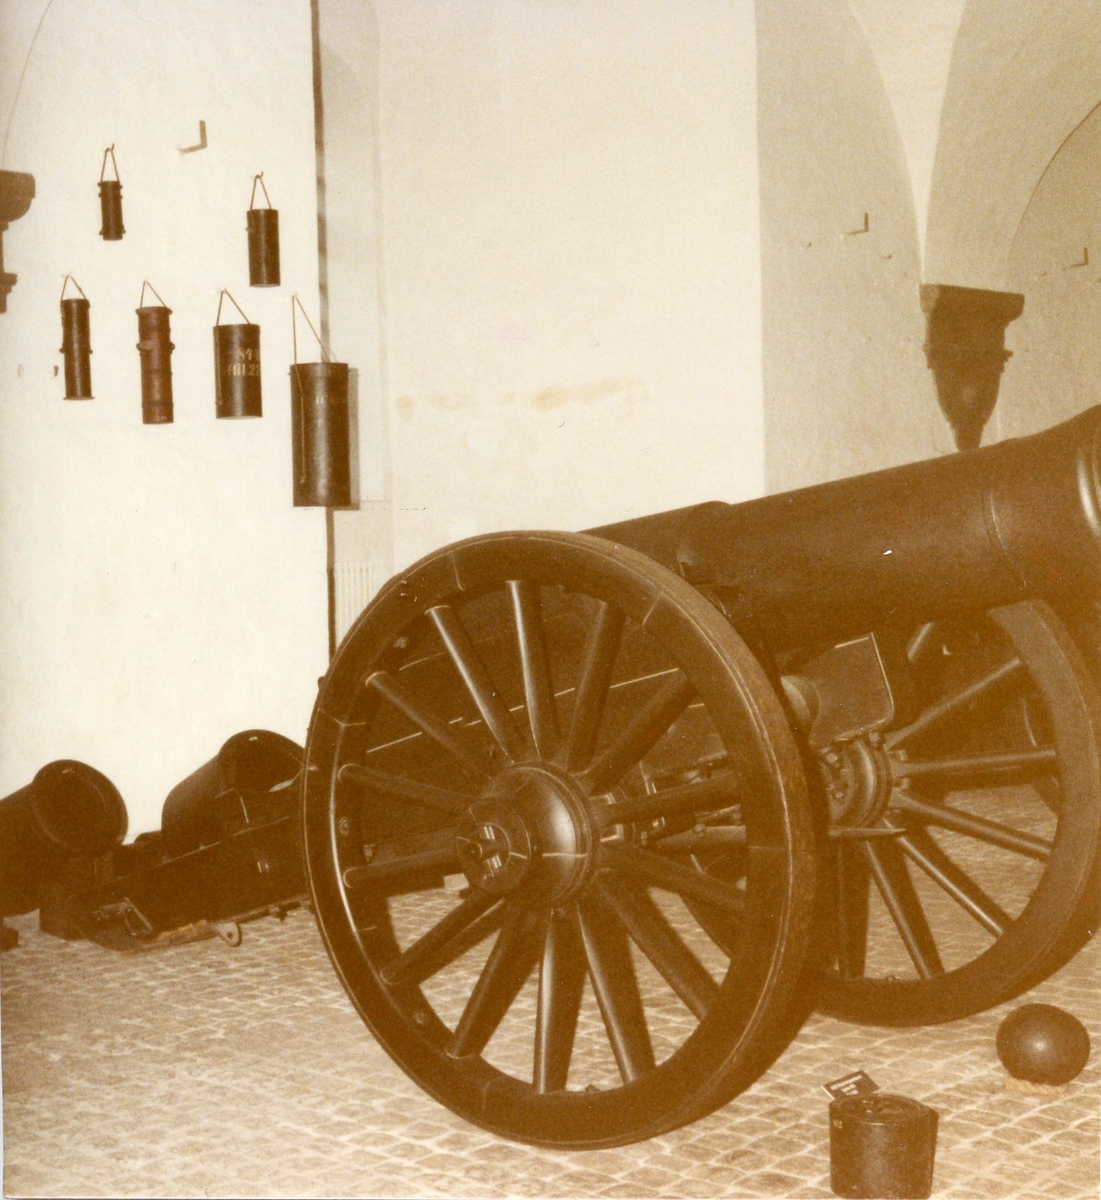 Kanon, 1800-talet. Studiebesök på Töjhusmuséet, Köpenhamn.